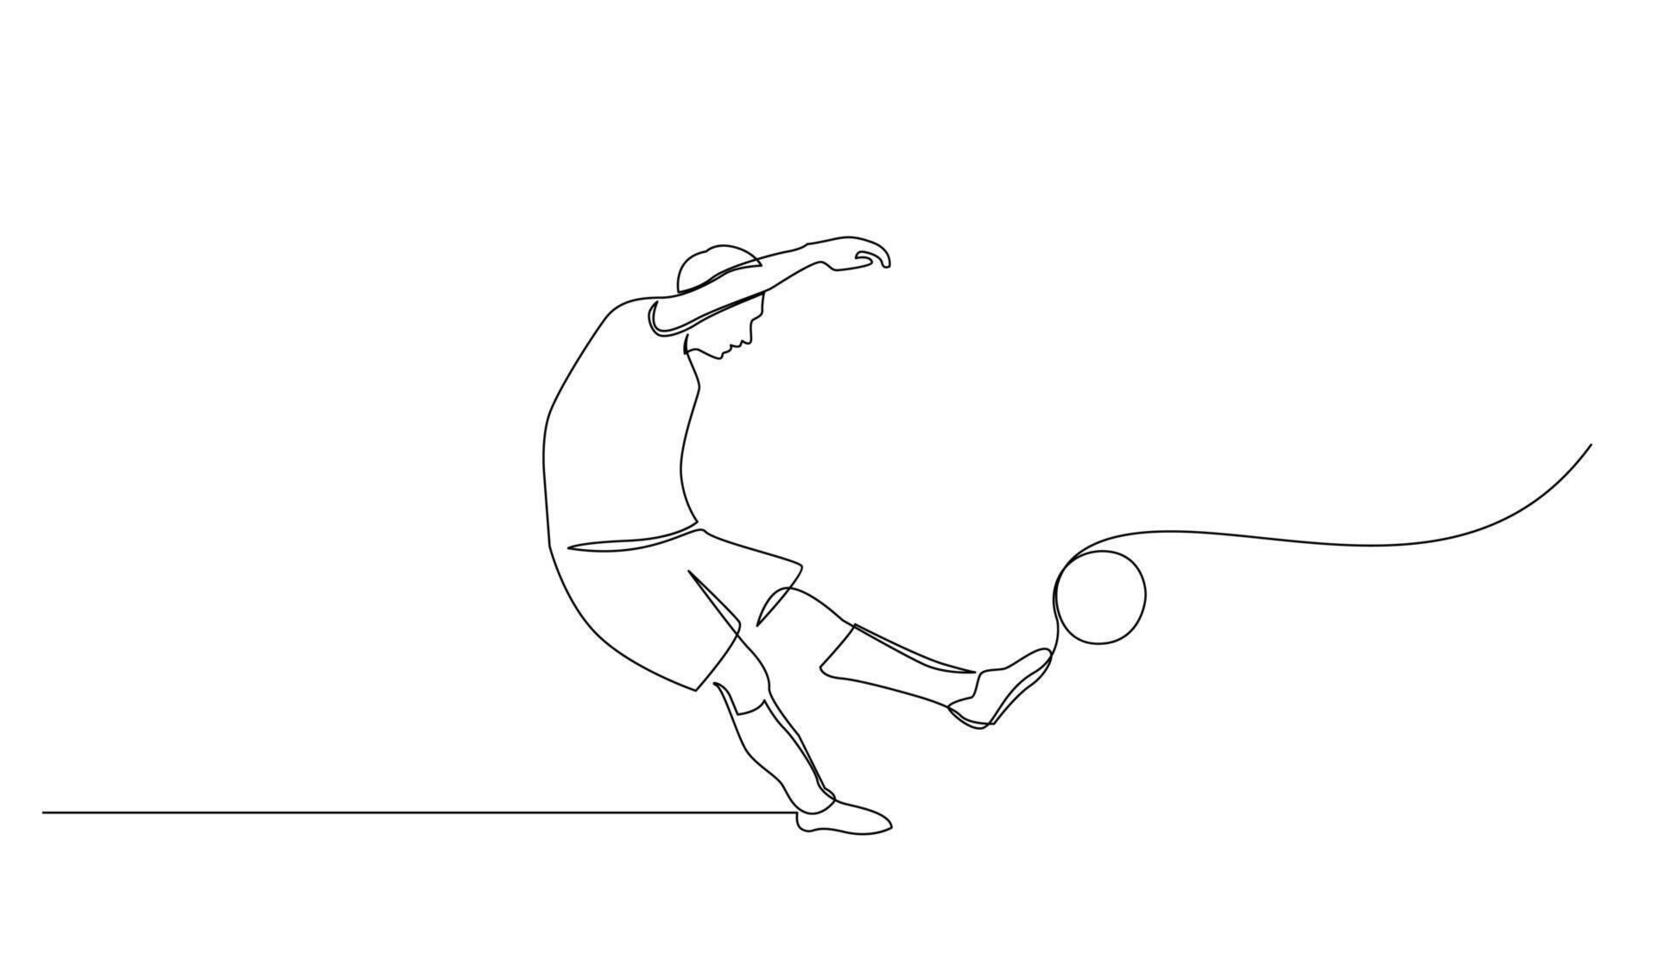 continuo línea dibujo de fútbol americano jugador saltar y mosca a pateando pelota. soltero uno línea Arte de joven hombre jugando fútbol pelota vector